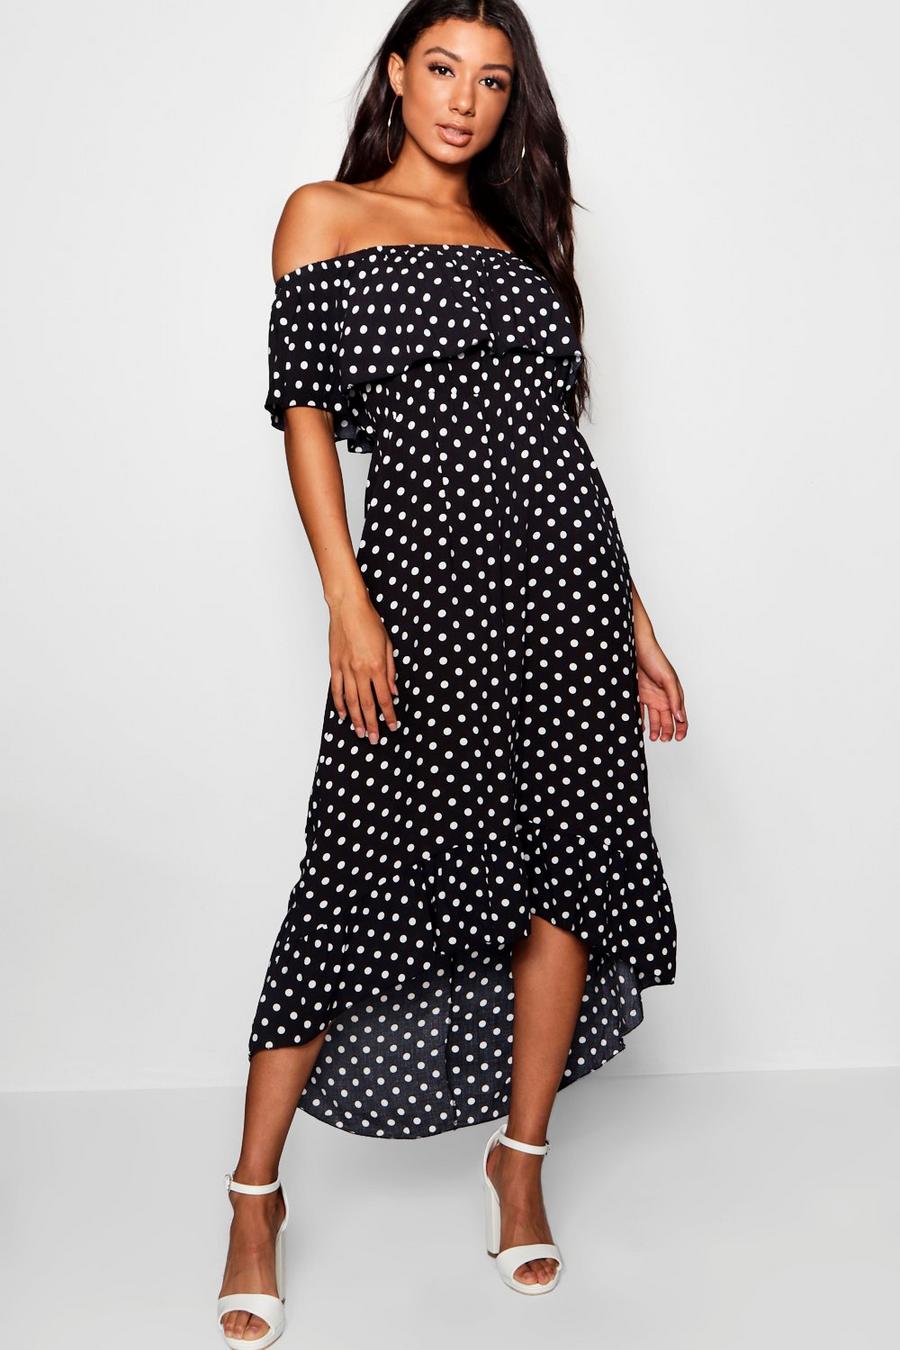 Black Woven Polka Dot Print Off The Shoulder Maxi Dress image number 1